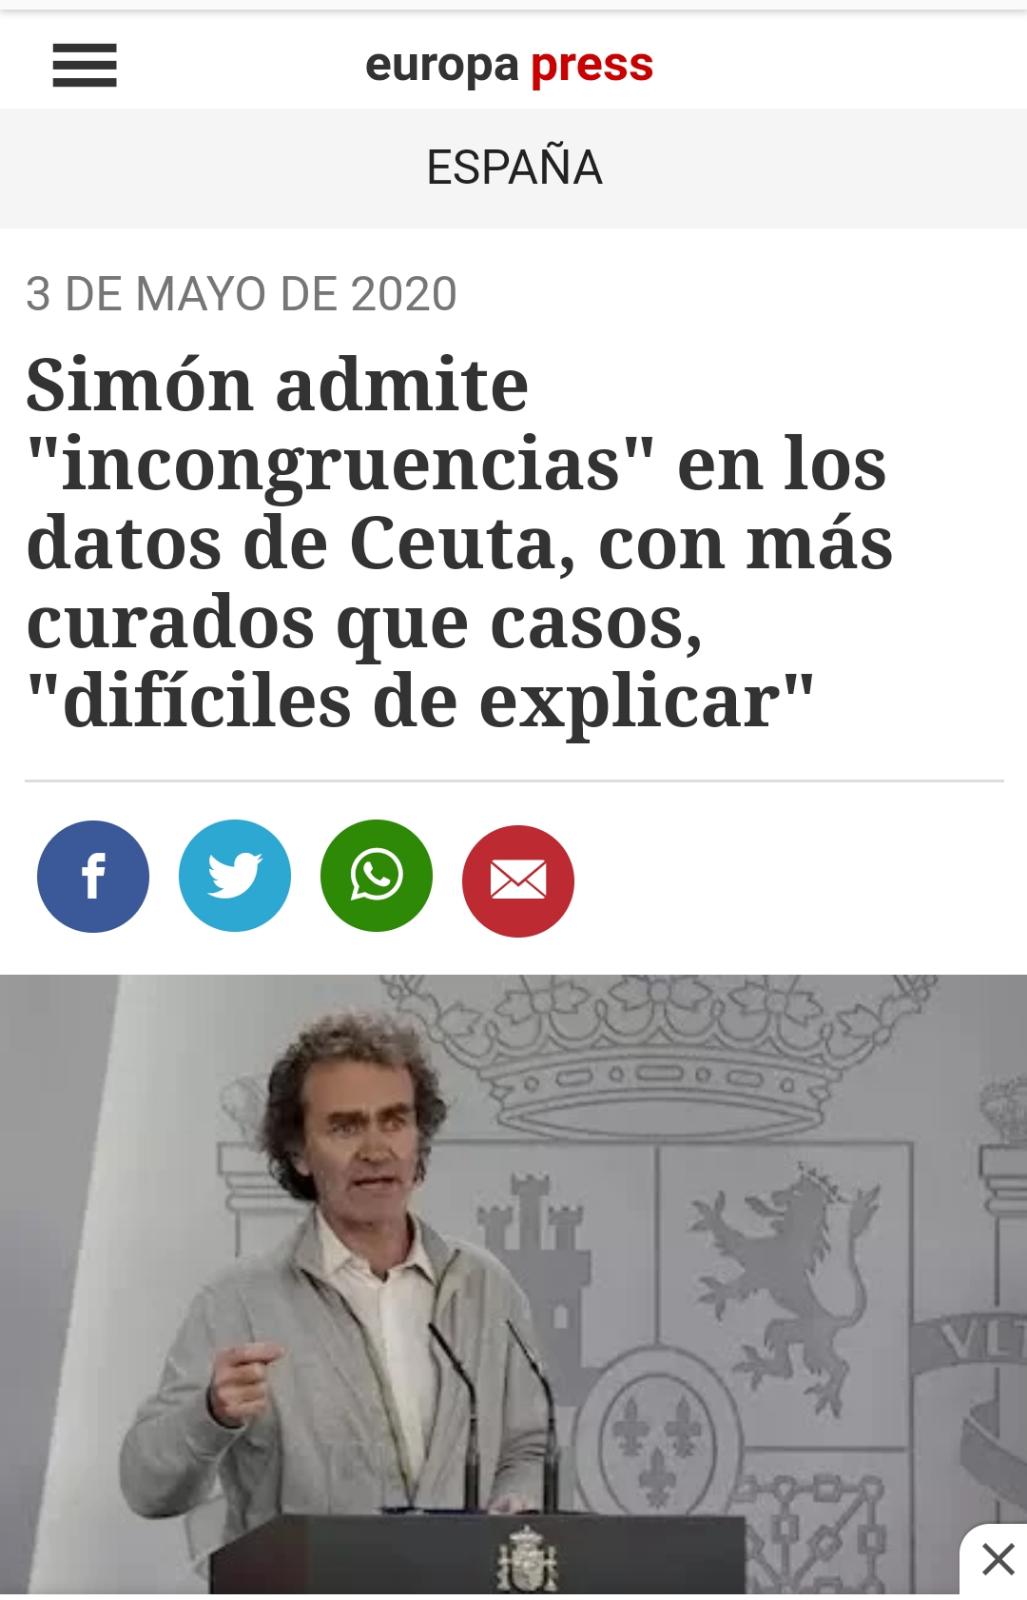 Fernando Simón "pillado": ¿No se suman los sanitarios a los positivos?